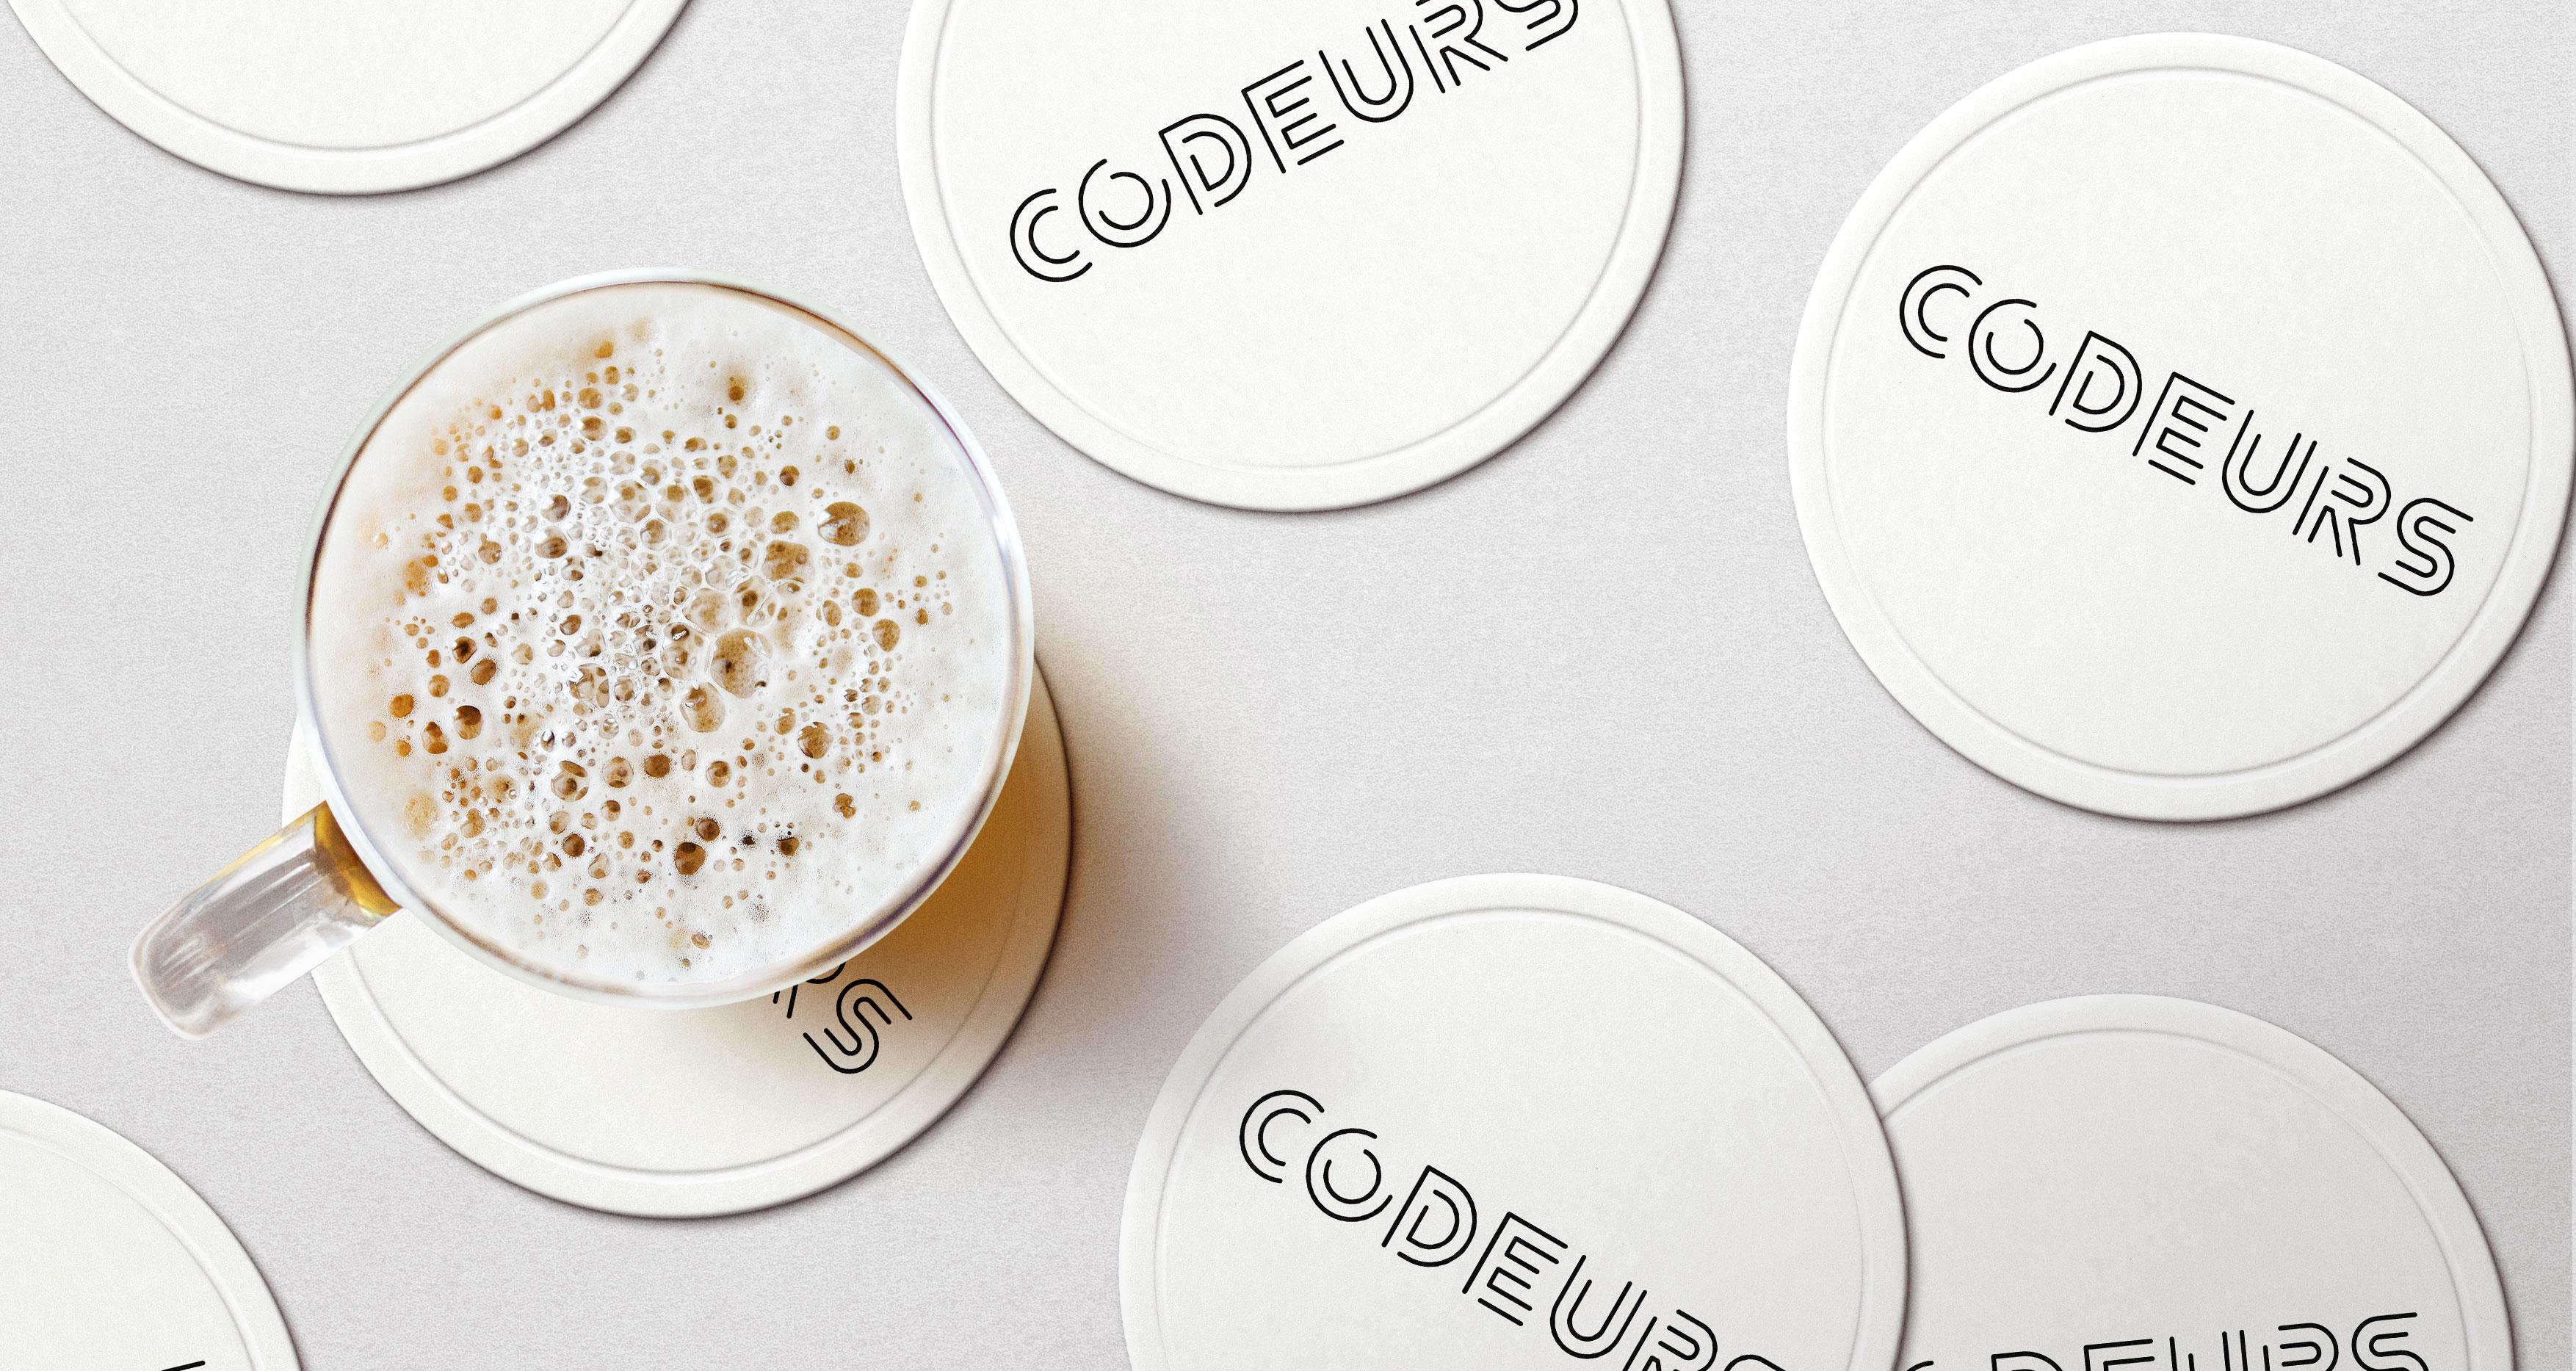 Beer coasters with Codeurs logo